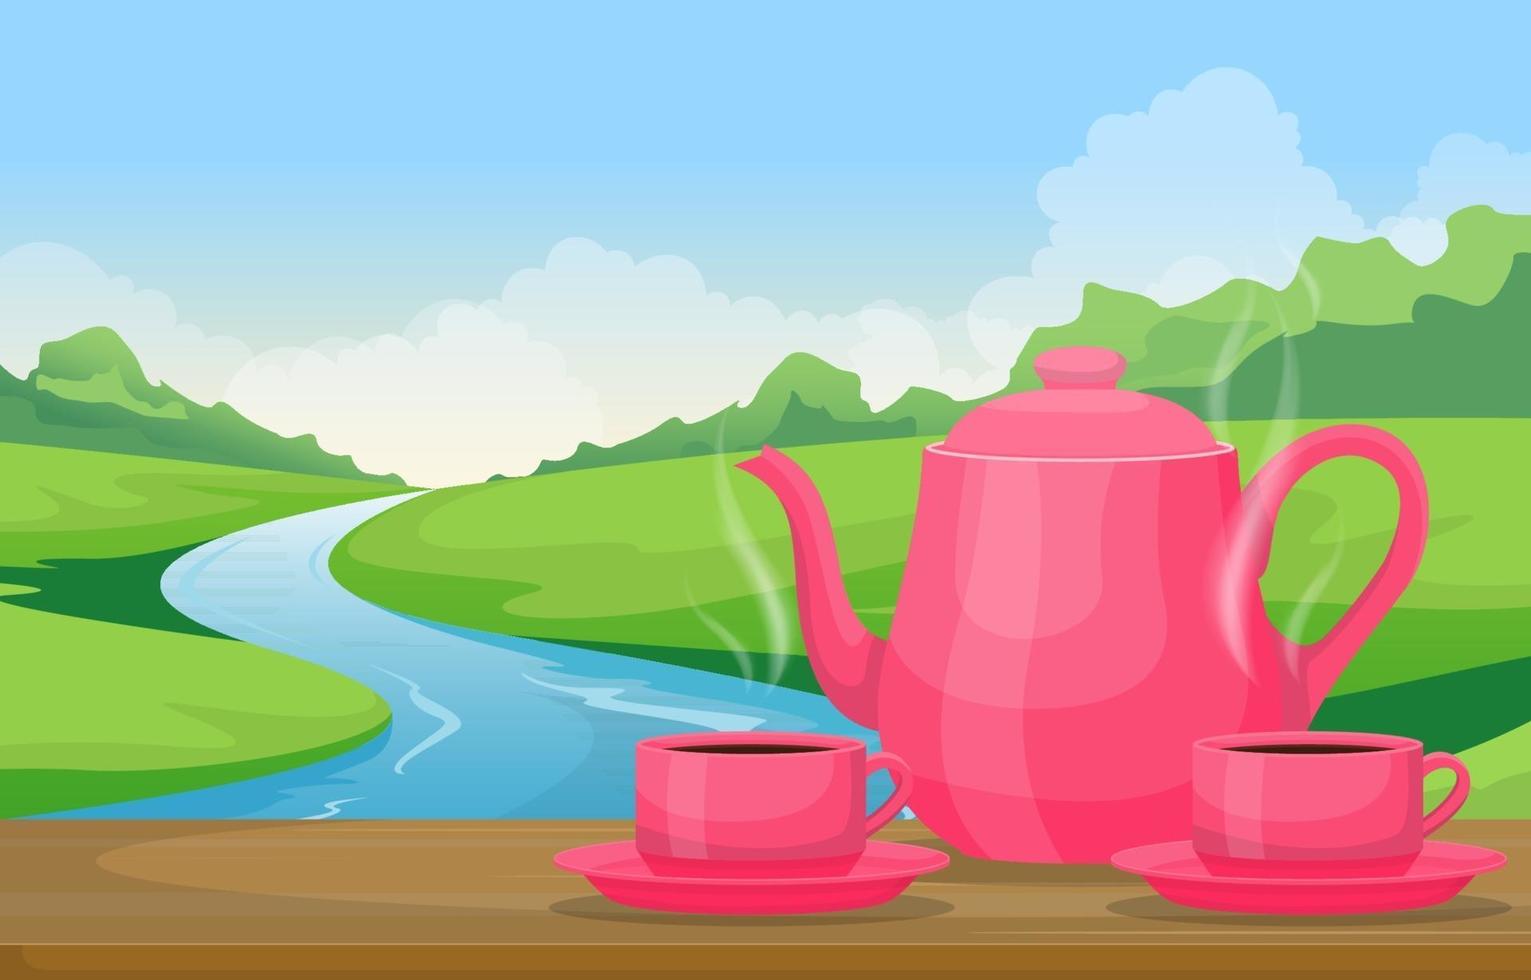 théière et tasses sur table avec vue sur la rivière et le paysage forestier vecteur